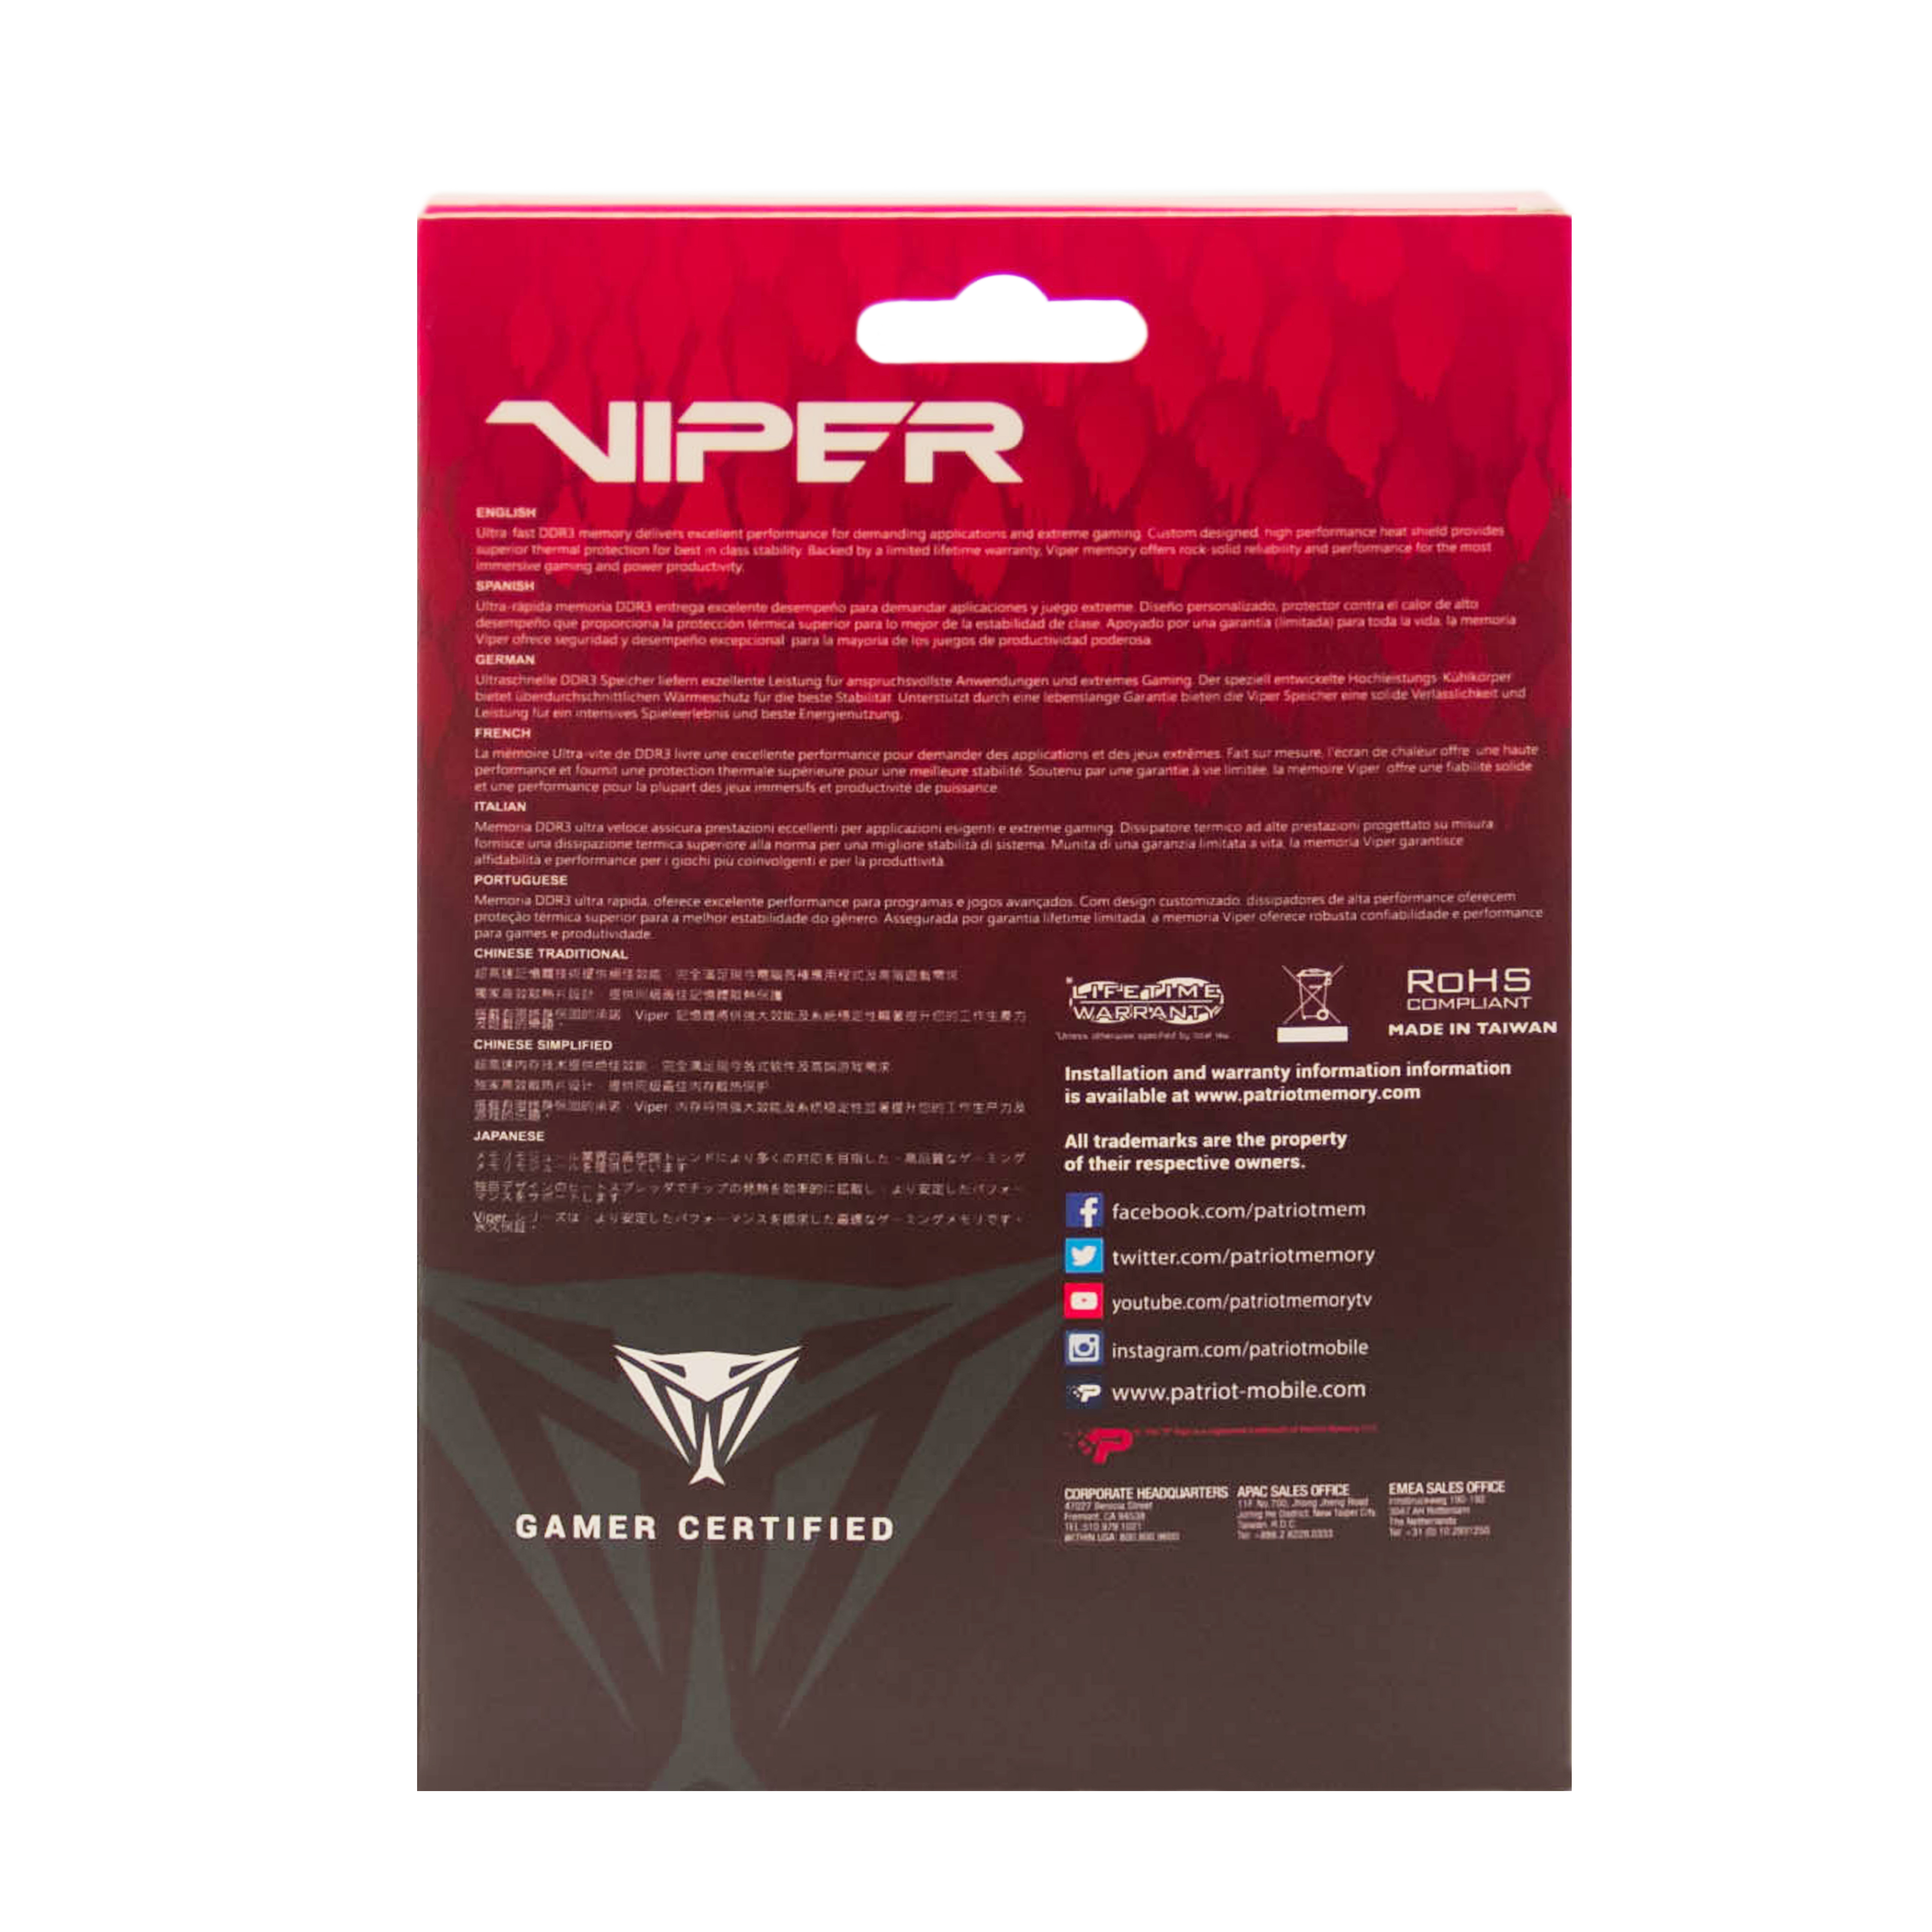 Patriot Viper 4/ DDR4/ 16GB/ 3600MHz/ CL17/ 2x8GB/ Red 